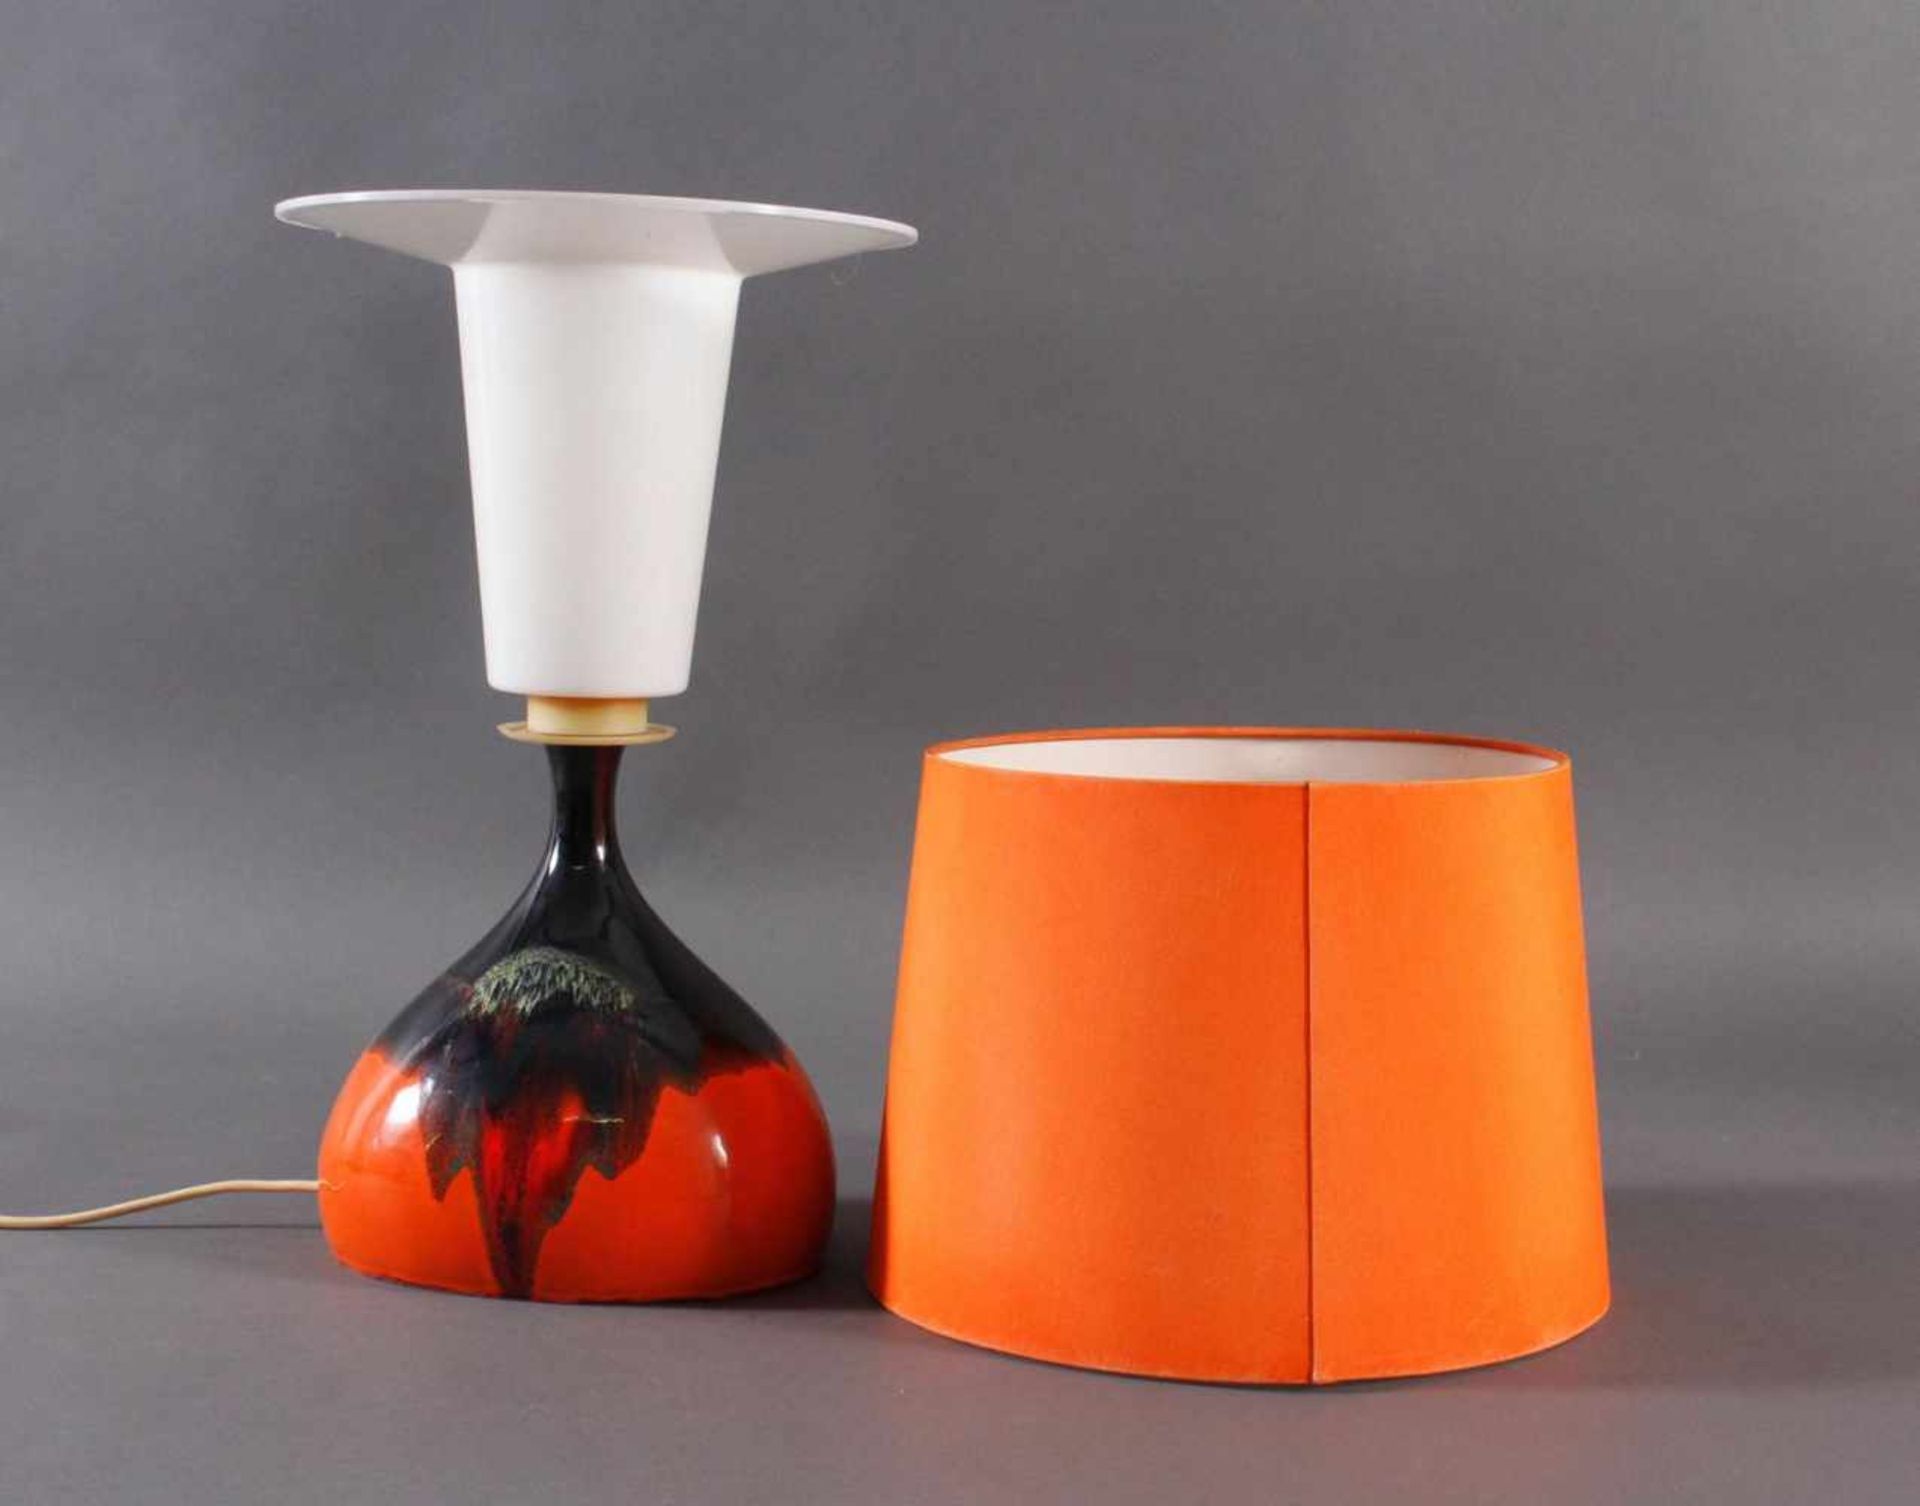 Tischlampe von Rosenthal DesignKeramik-Lampe, Entwurf Björn Wiinblad für Rosenthal aus den 1970ern - Bild 2 aus 3